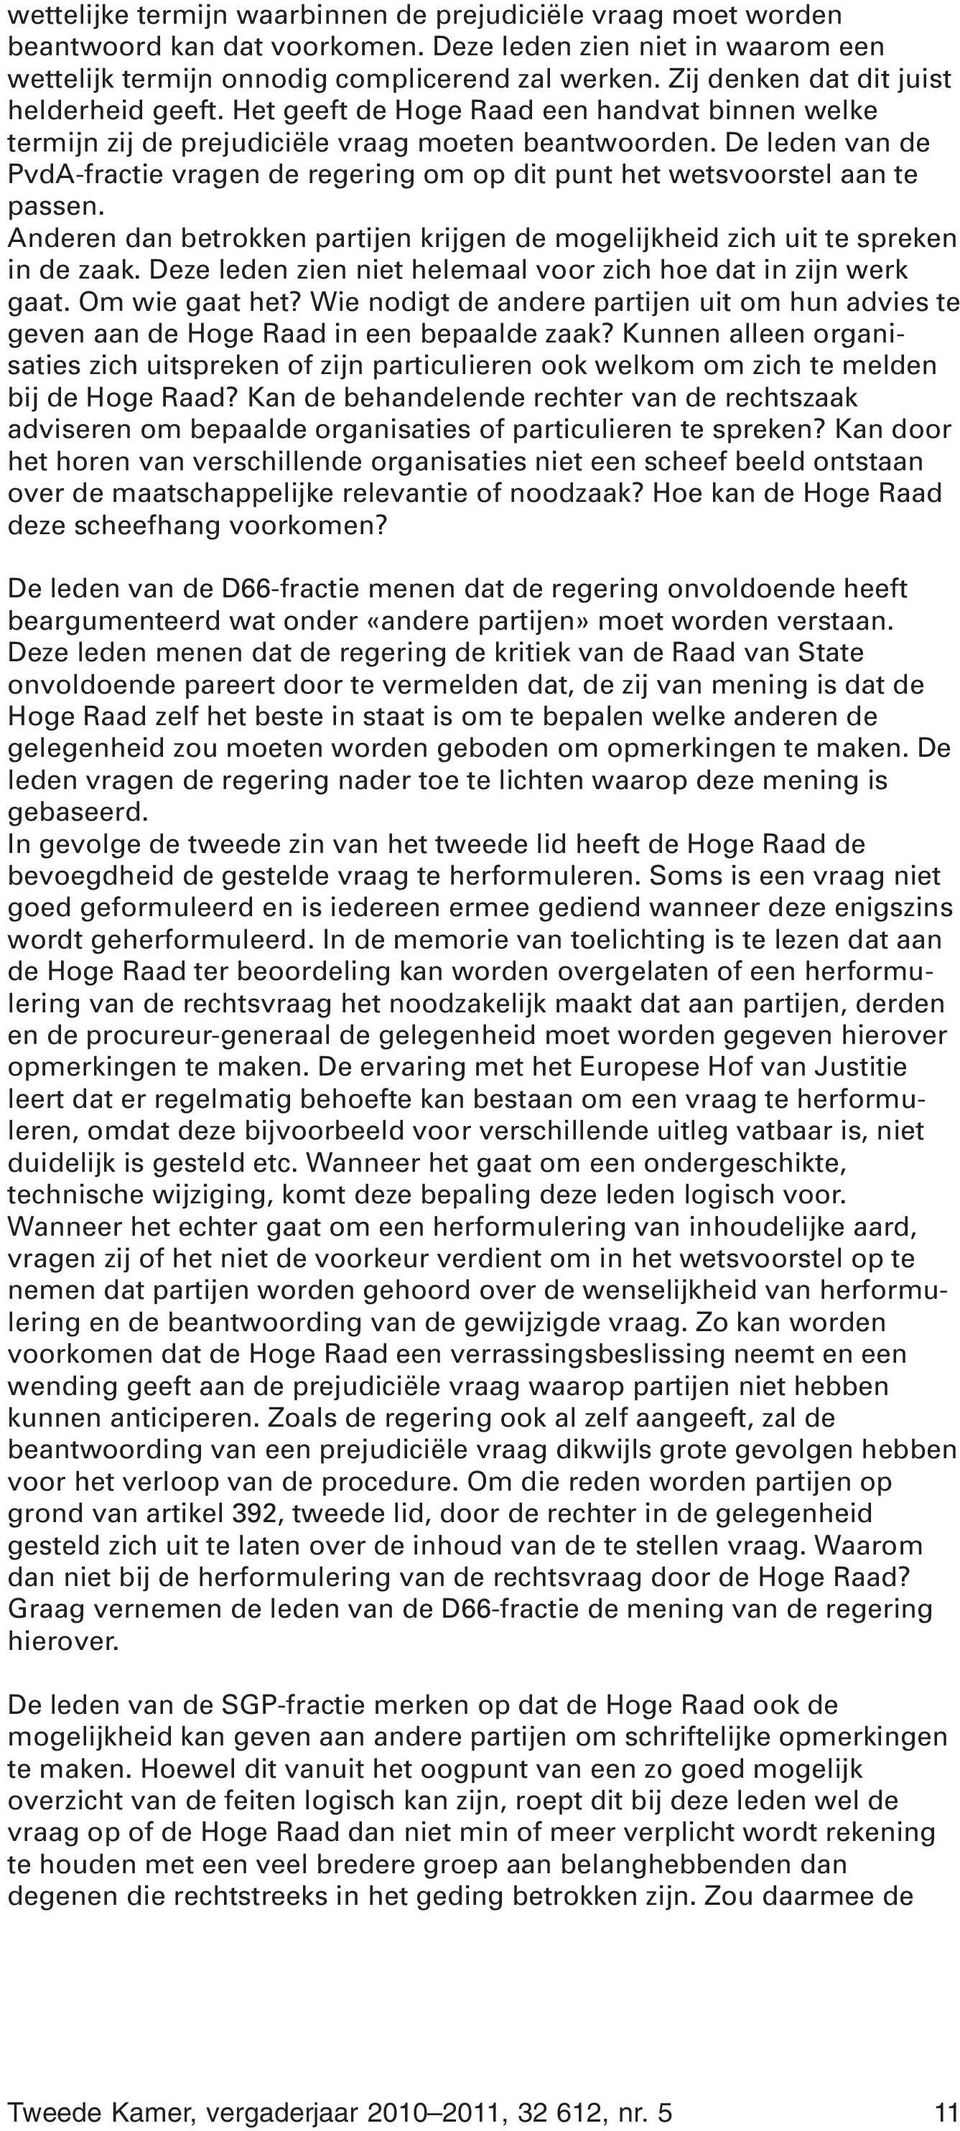 De leden van de PvdA-fractie vragen de regering om op dit punt het wetsvoorstel aan te passen. Anderen dan betrokken partijen krijgen de mogelijkheid zich uit te spreken in de zaak.